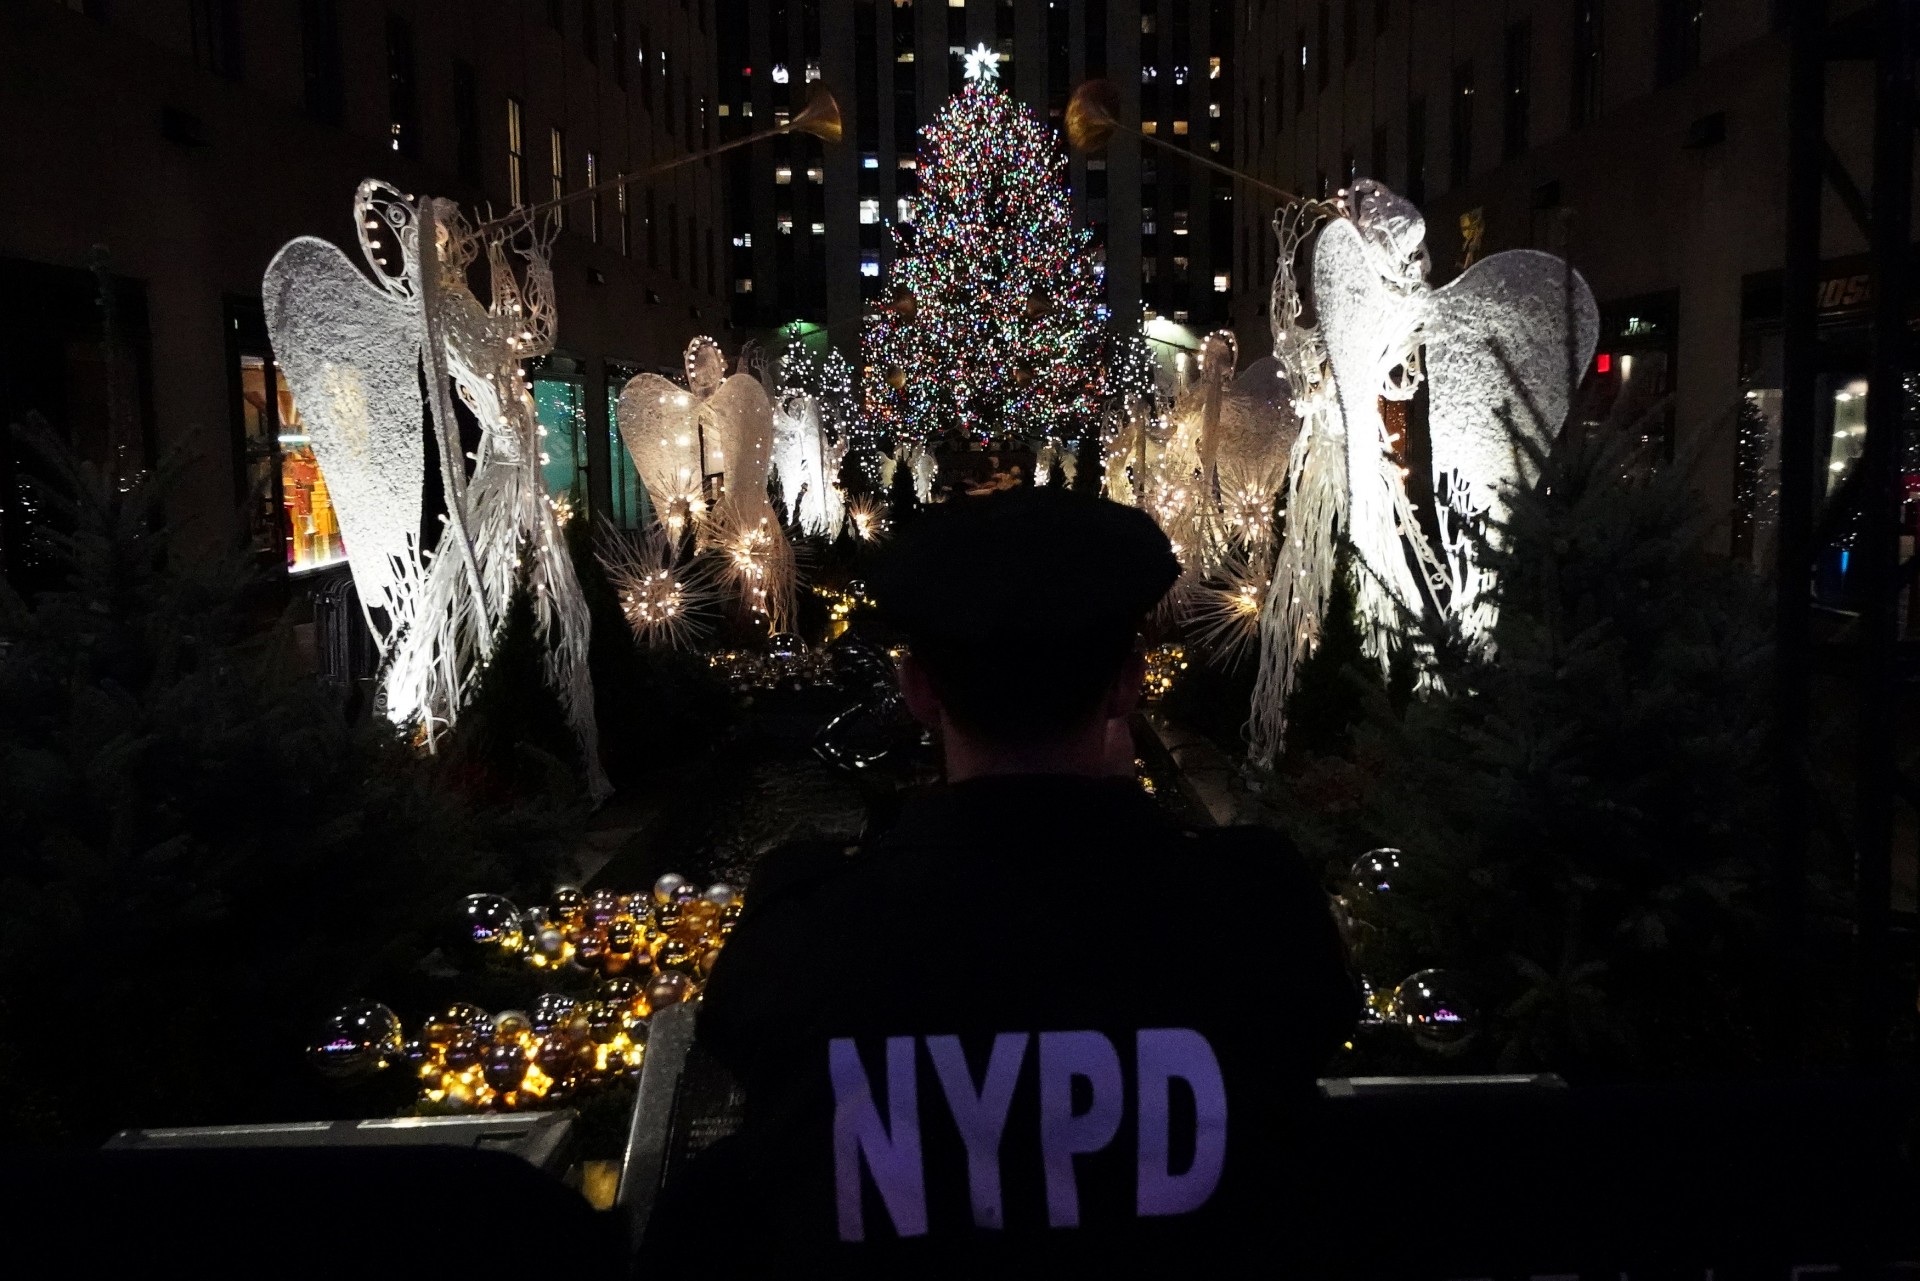 Las festividades de este año contaron con medidas de seguridad más estrictas luego del atentado terrorista del 31 de octubre en el que un hombre condujo una camioneta a una ciclovía cerca del World Trade Center, donde mató a ocho personas